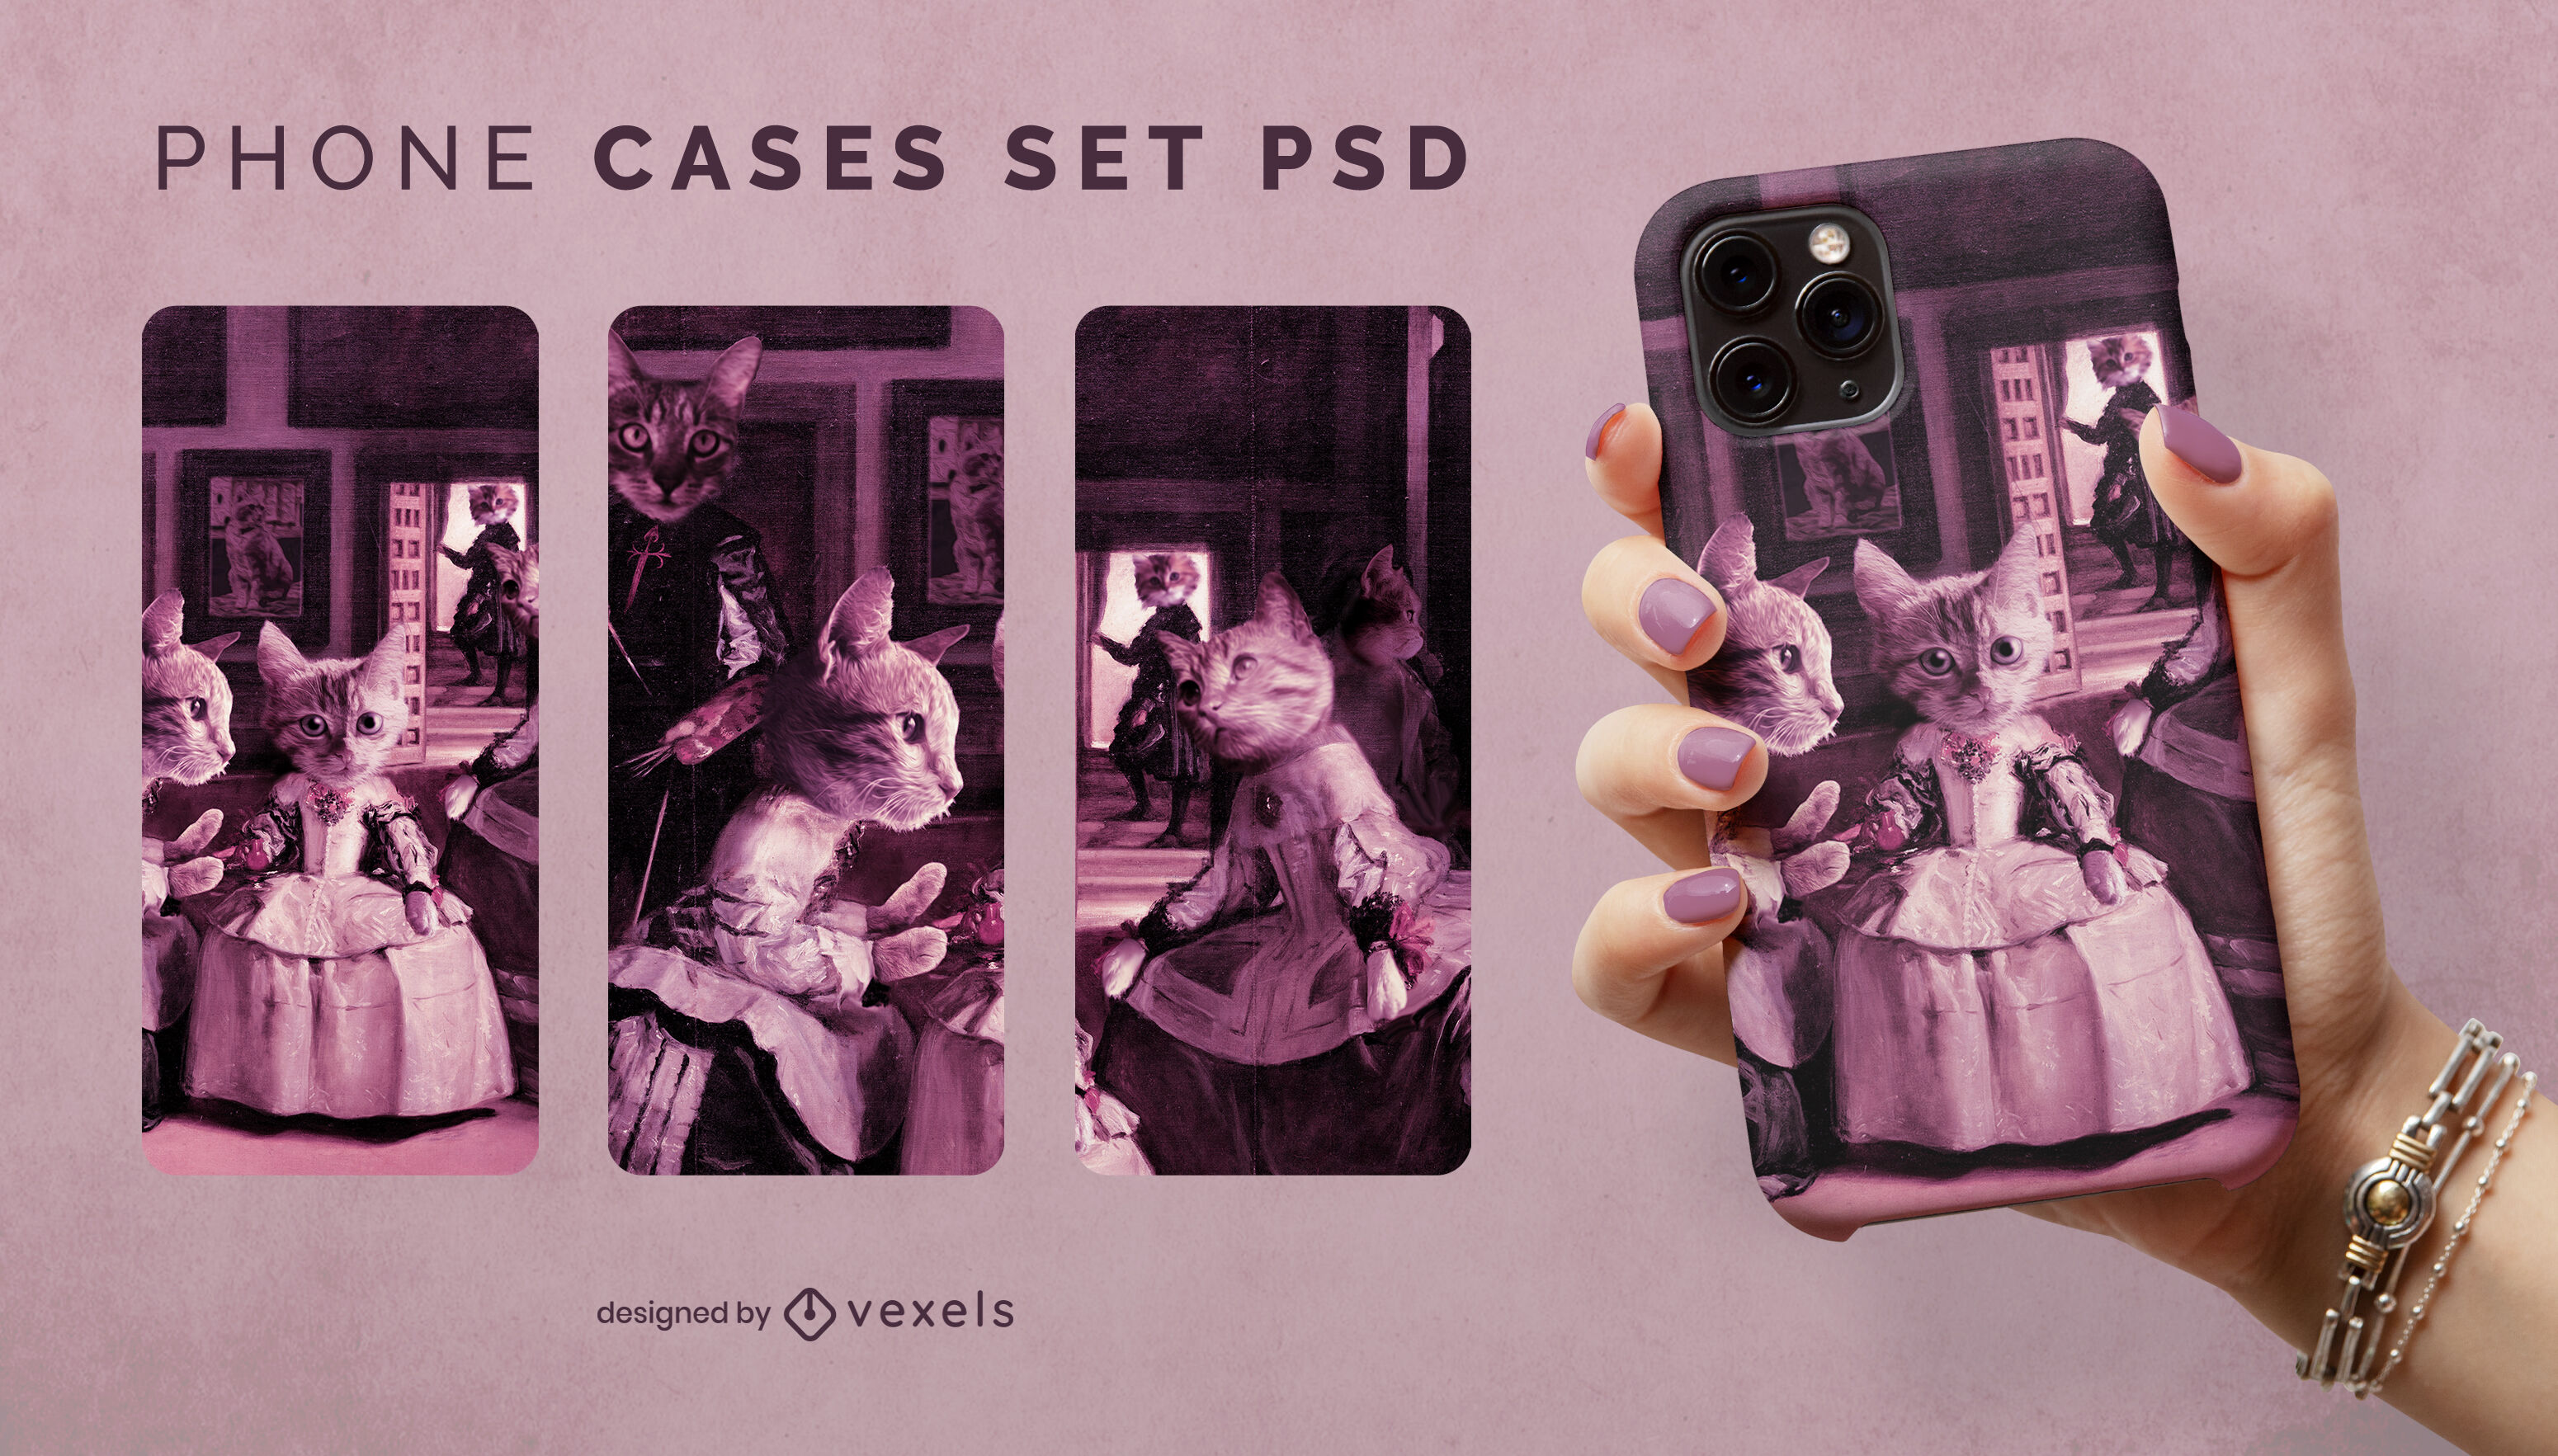 The meninas cat phone case set